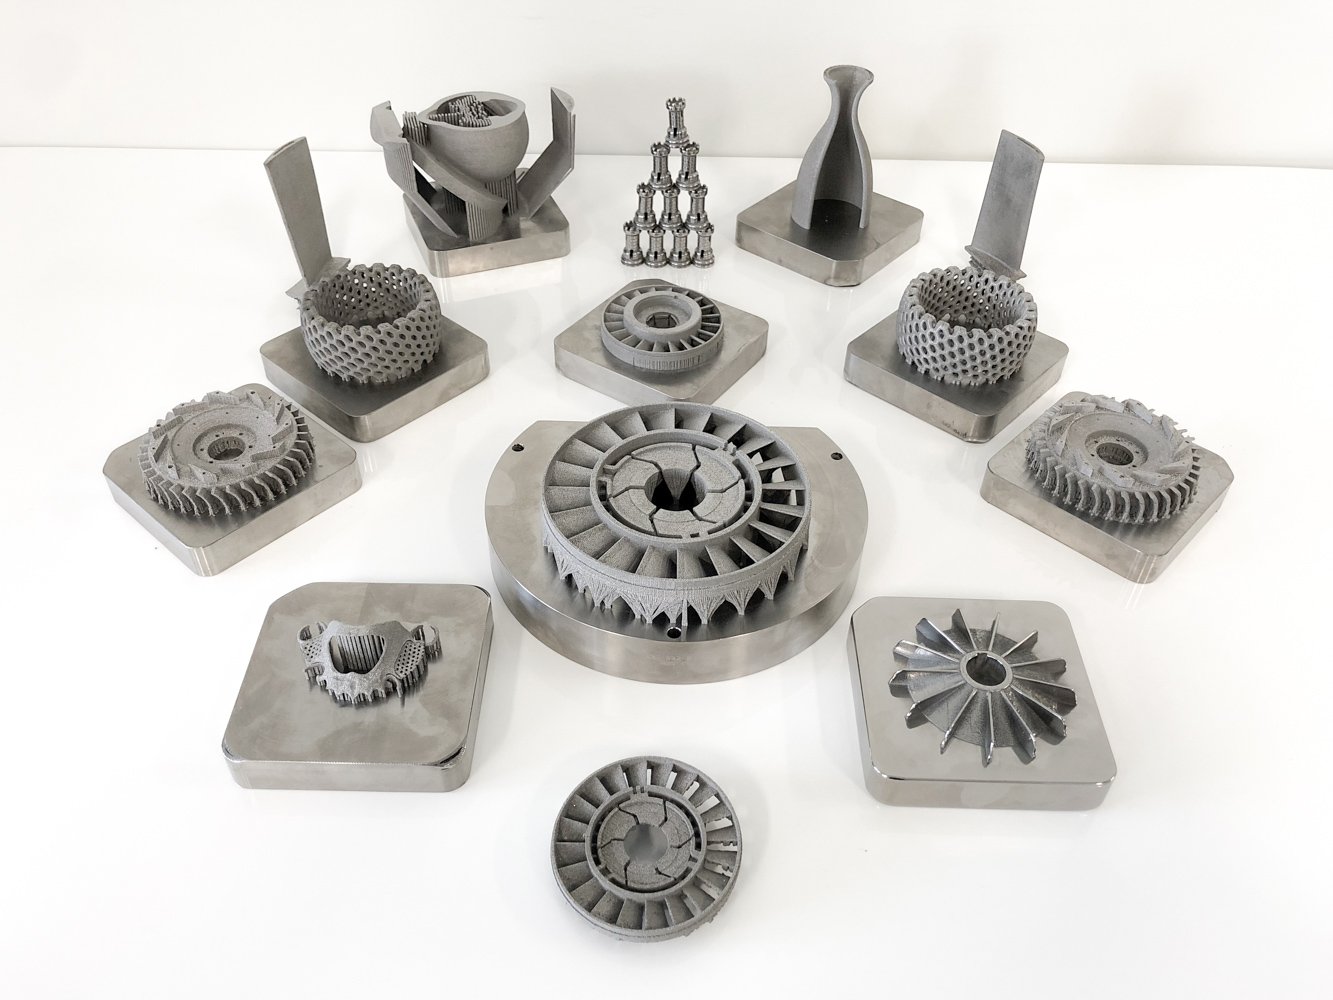 Metal 3D printed samples from Aurora Labs. Image via Aurora Labs